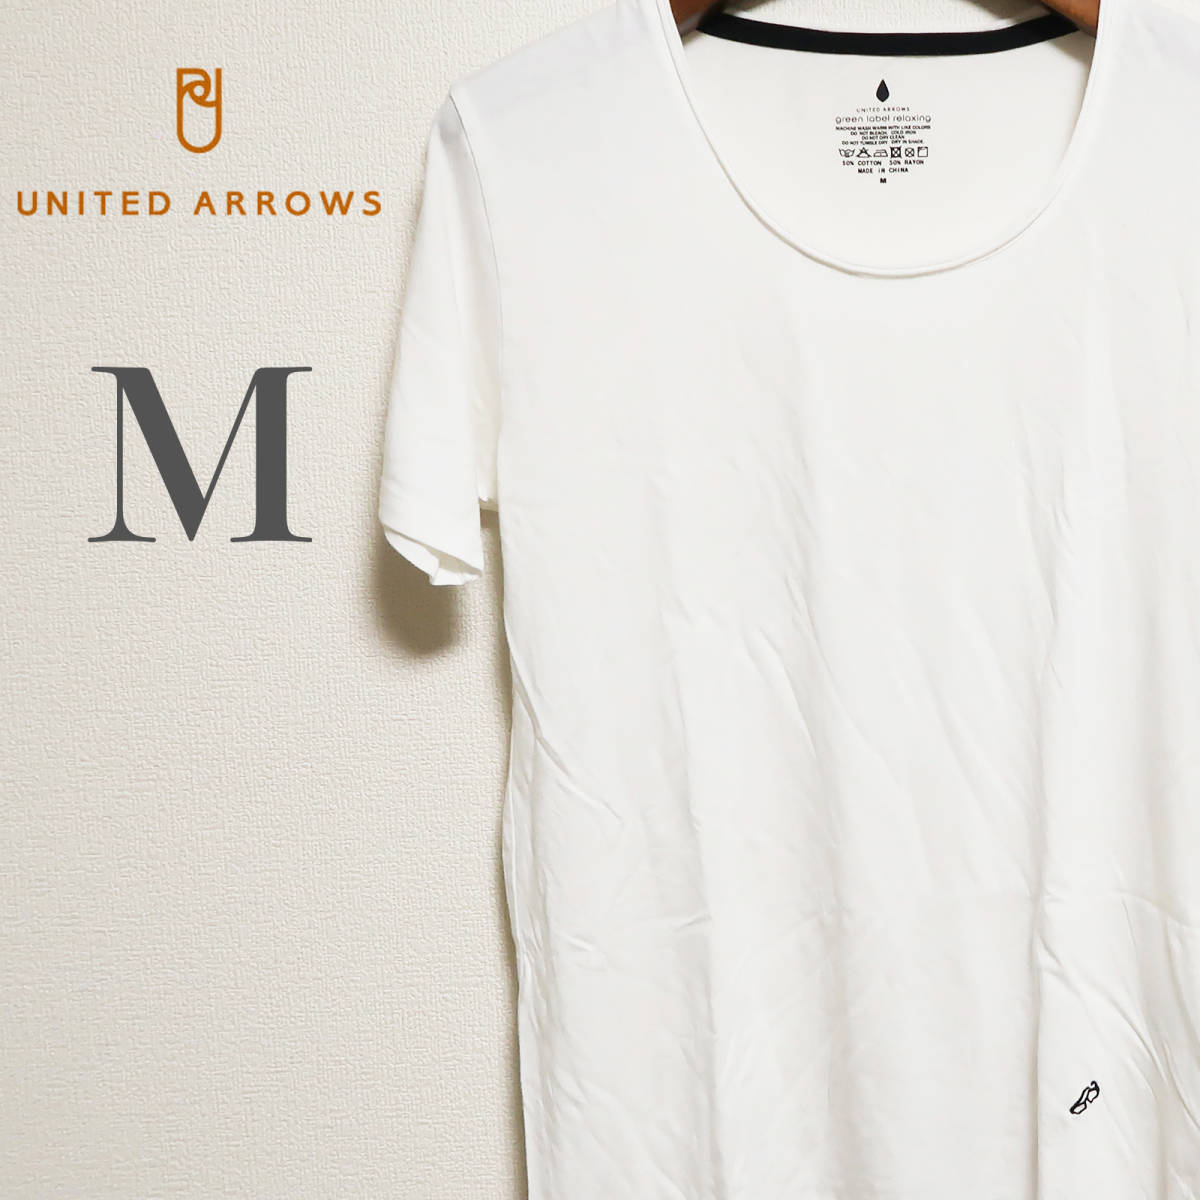 UNITED ARROWS ユナイテッドアローズ Tシャツ M ホワイト